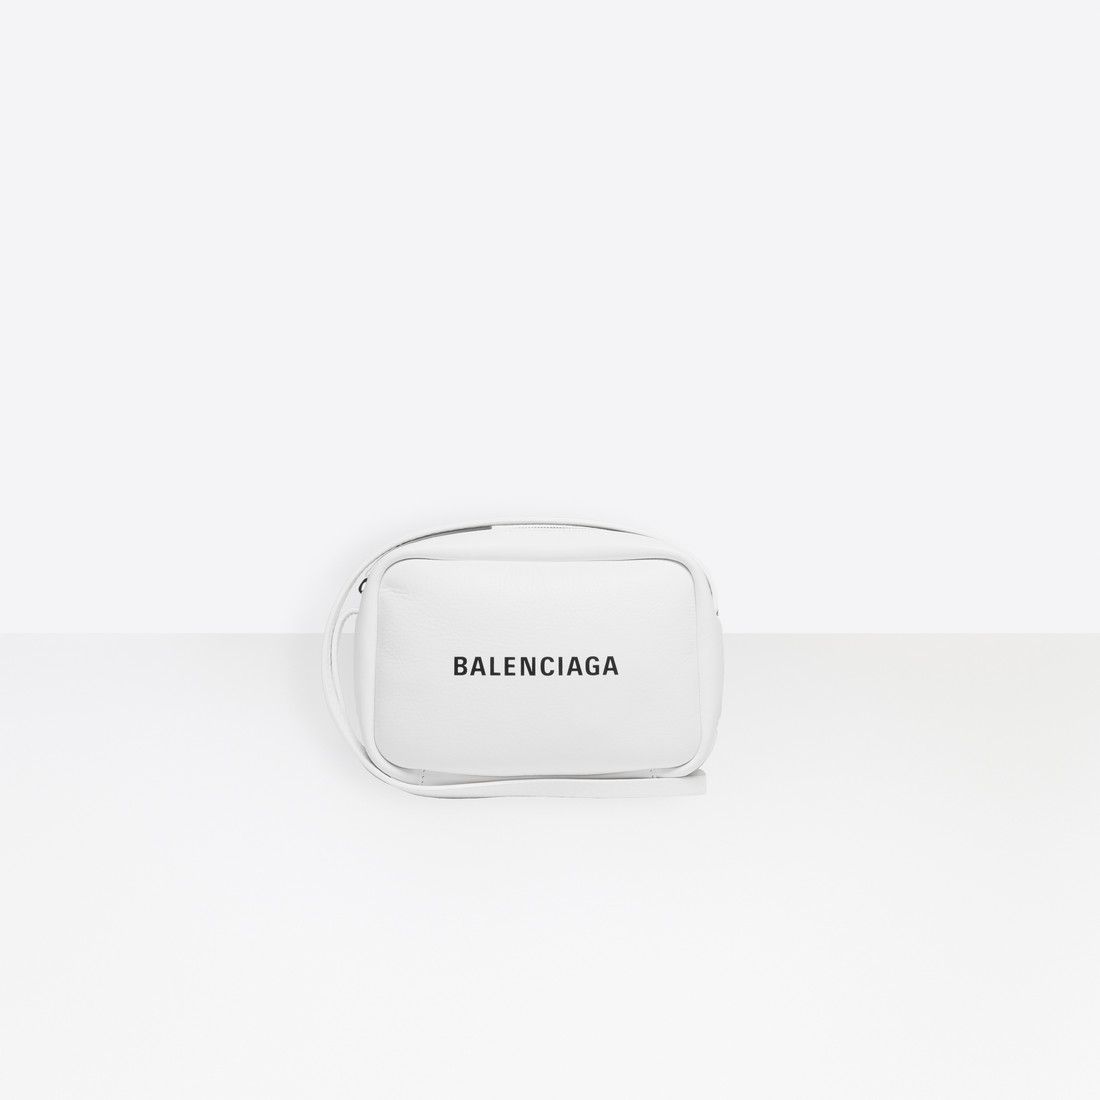 Balenciaga - Everyday Camera Bag S White / Black | Balenciaga